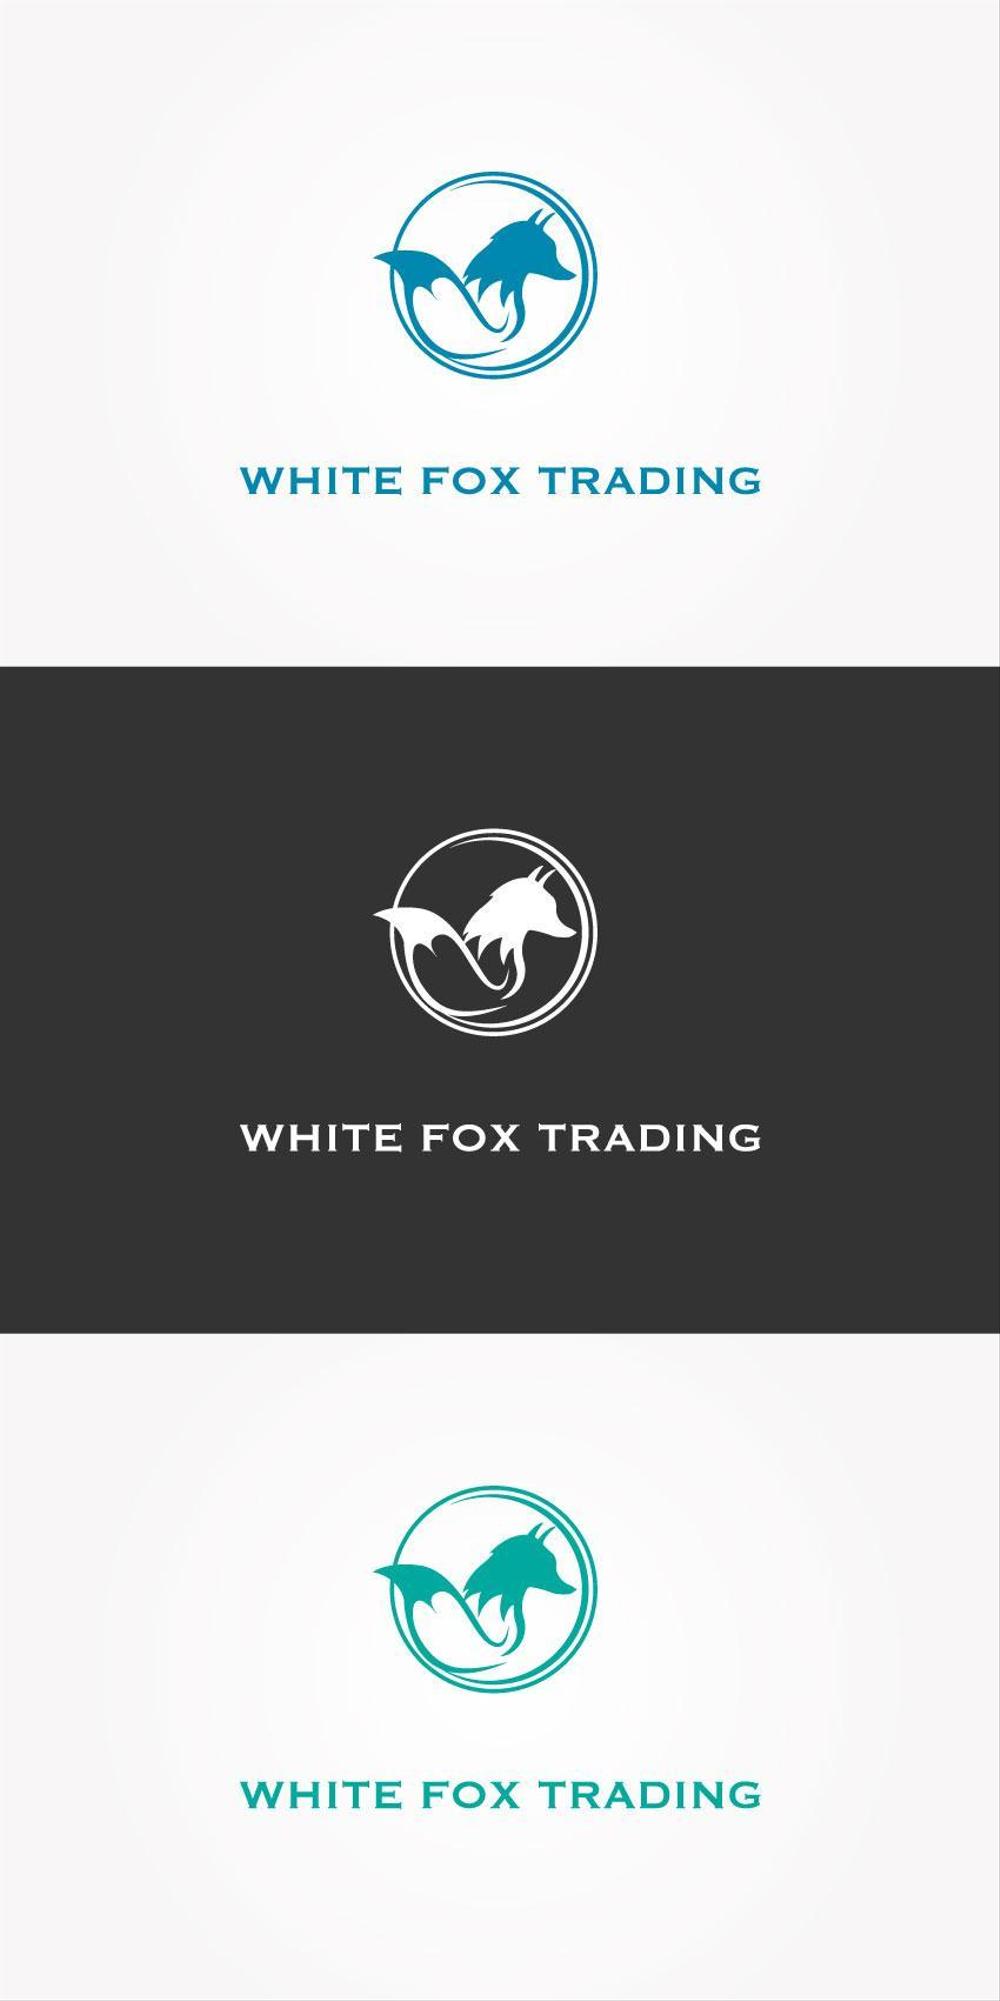 WHITE-FOX-TRADING-02.jpg